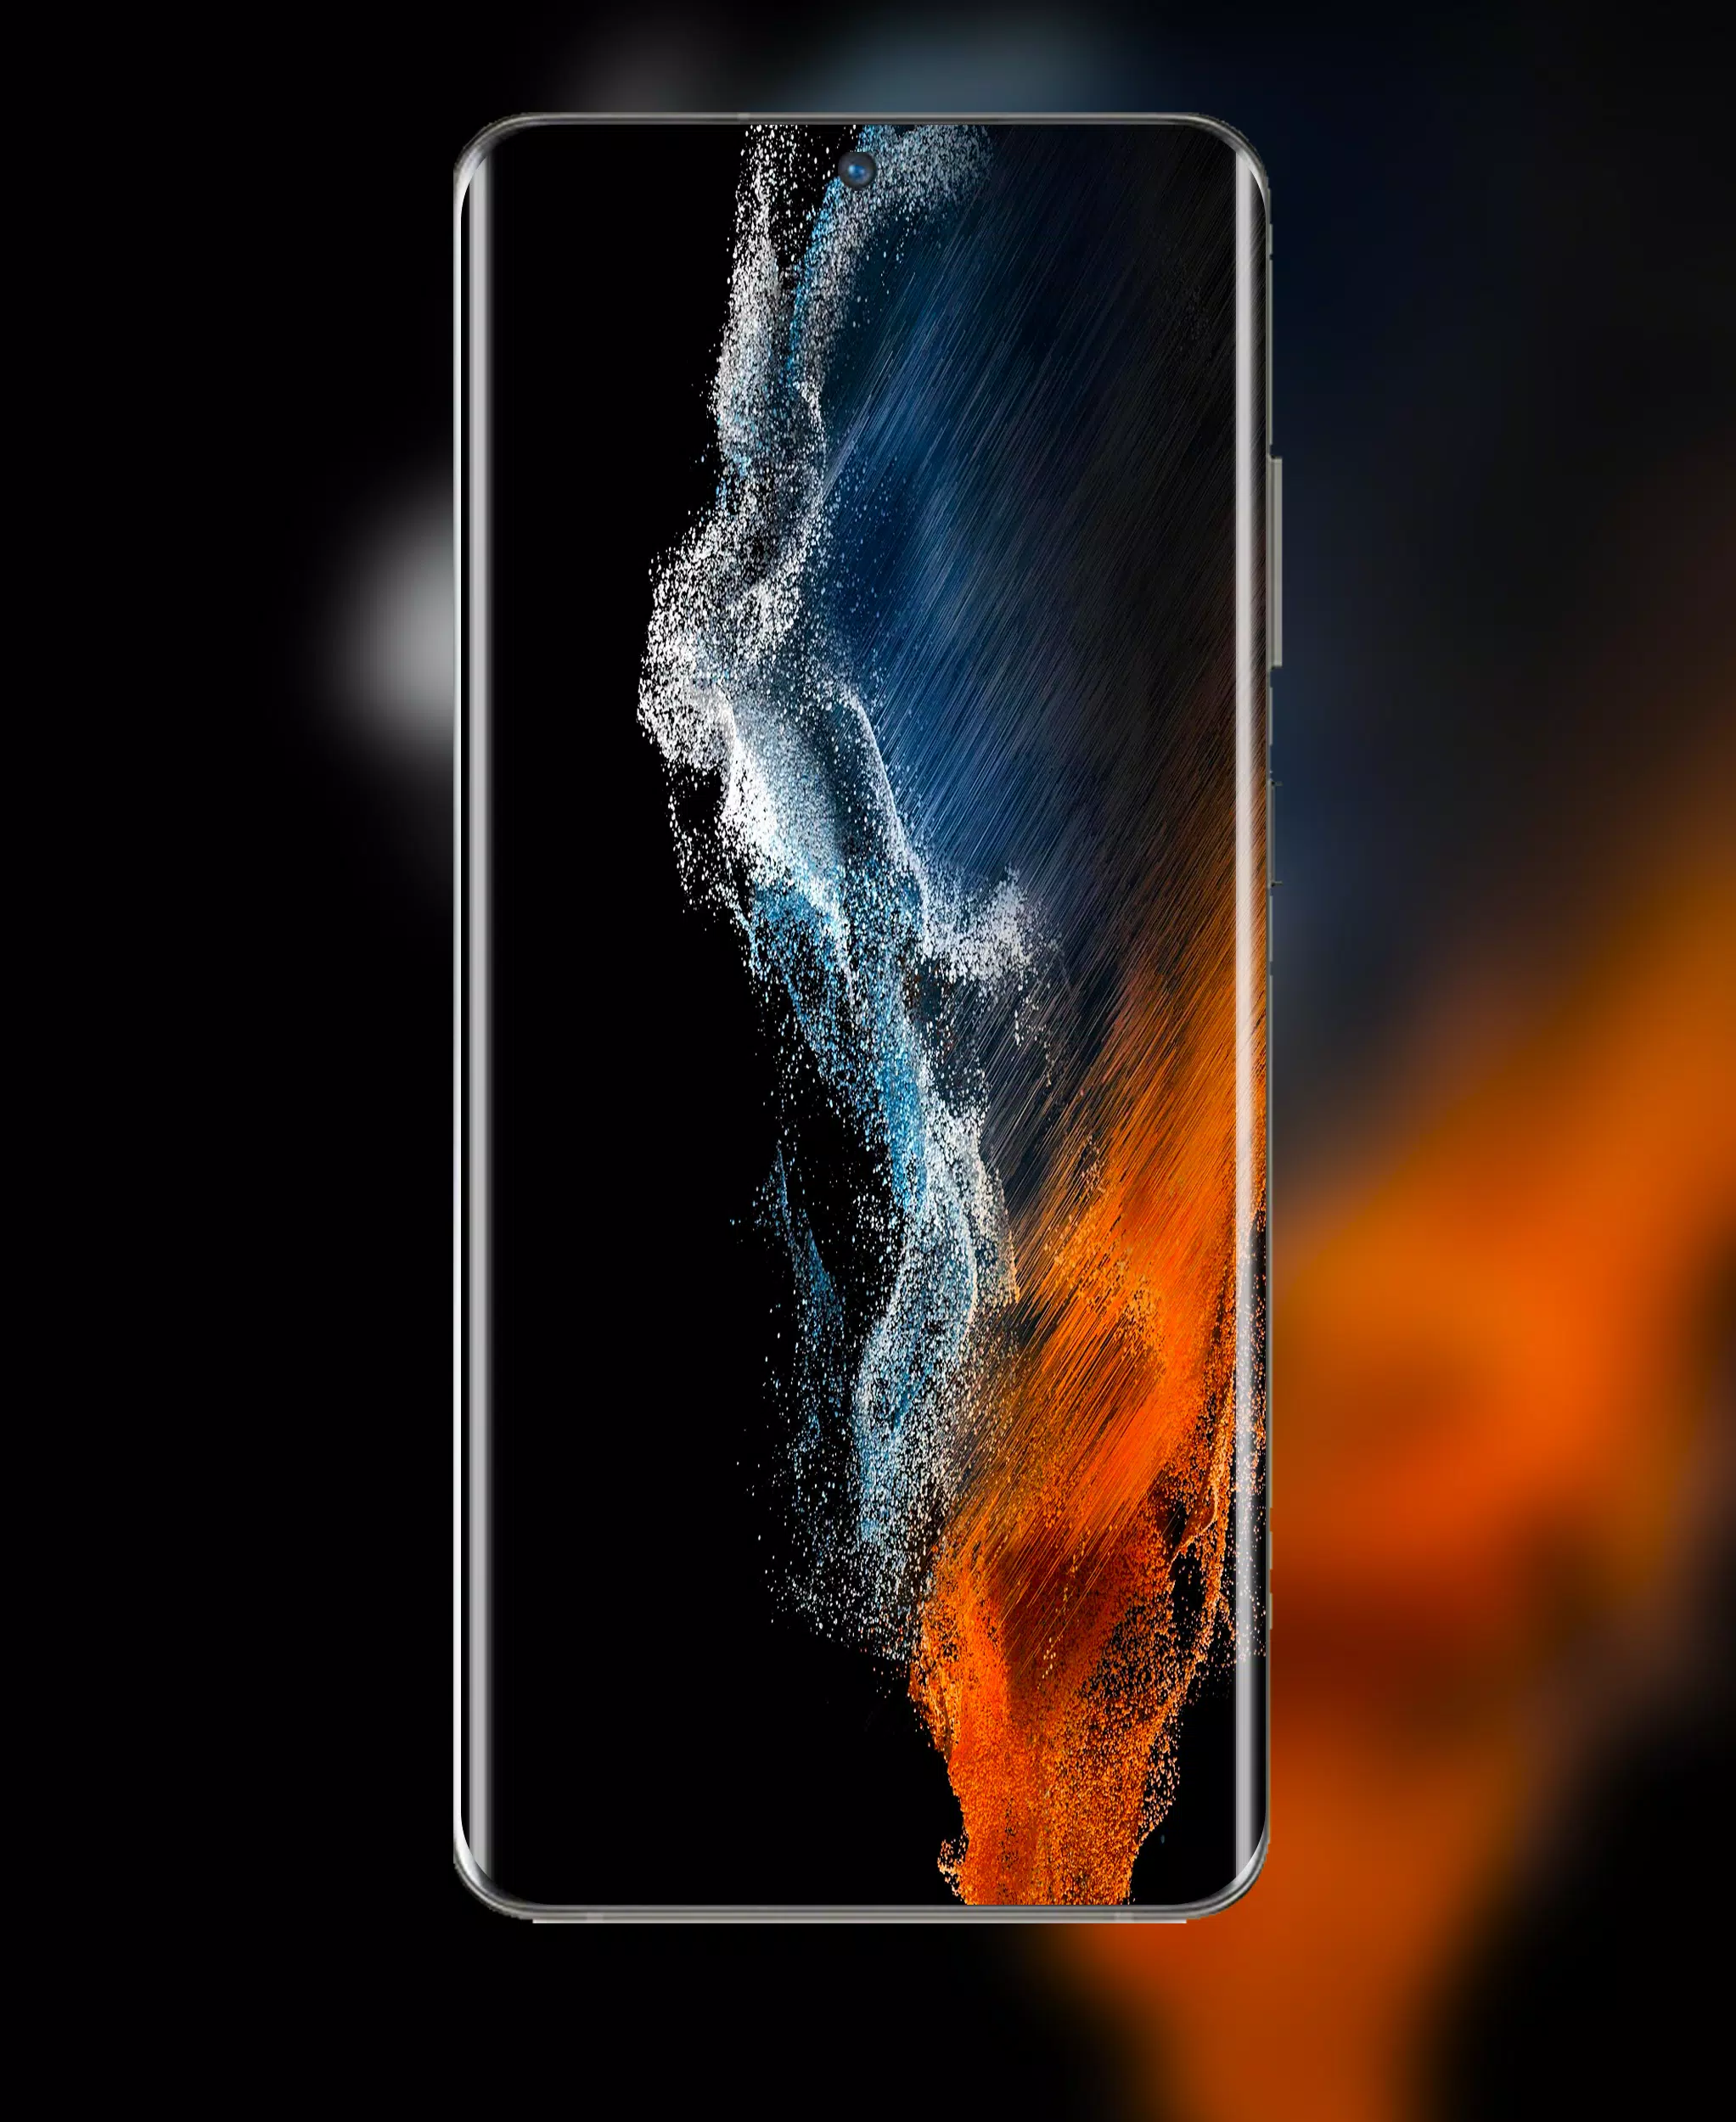 Với hình nền Galaxy S22 Ultra Wallpaper, bạn sẽ có được trải nghiệm tuyệt vời hơn khi sử dụng điện thoại Samsung. Với độ phân giải cao cùng với công nghệ hiện đại, hình ảnh trên điện thoại của bạn sẽ được cải thiện rõ rệt, mang đến cho bạn trải nghiệm giành cho những người yêu thích Galaxy như bạn!